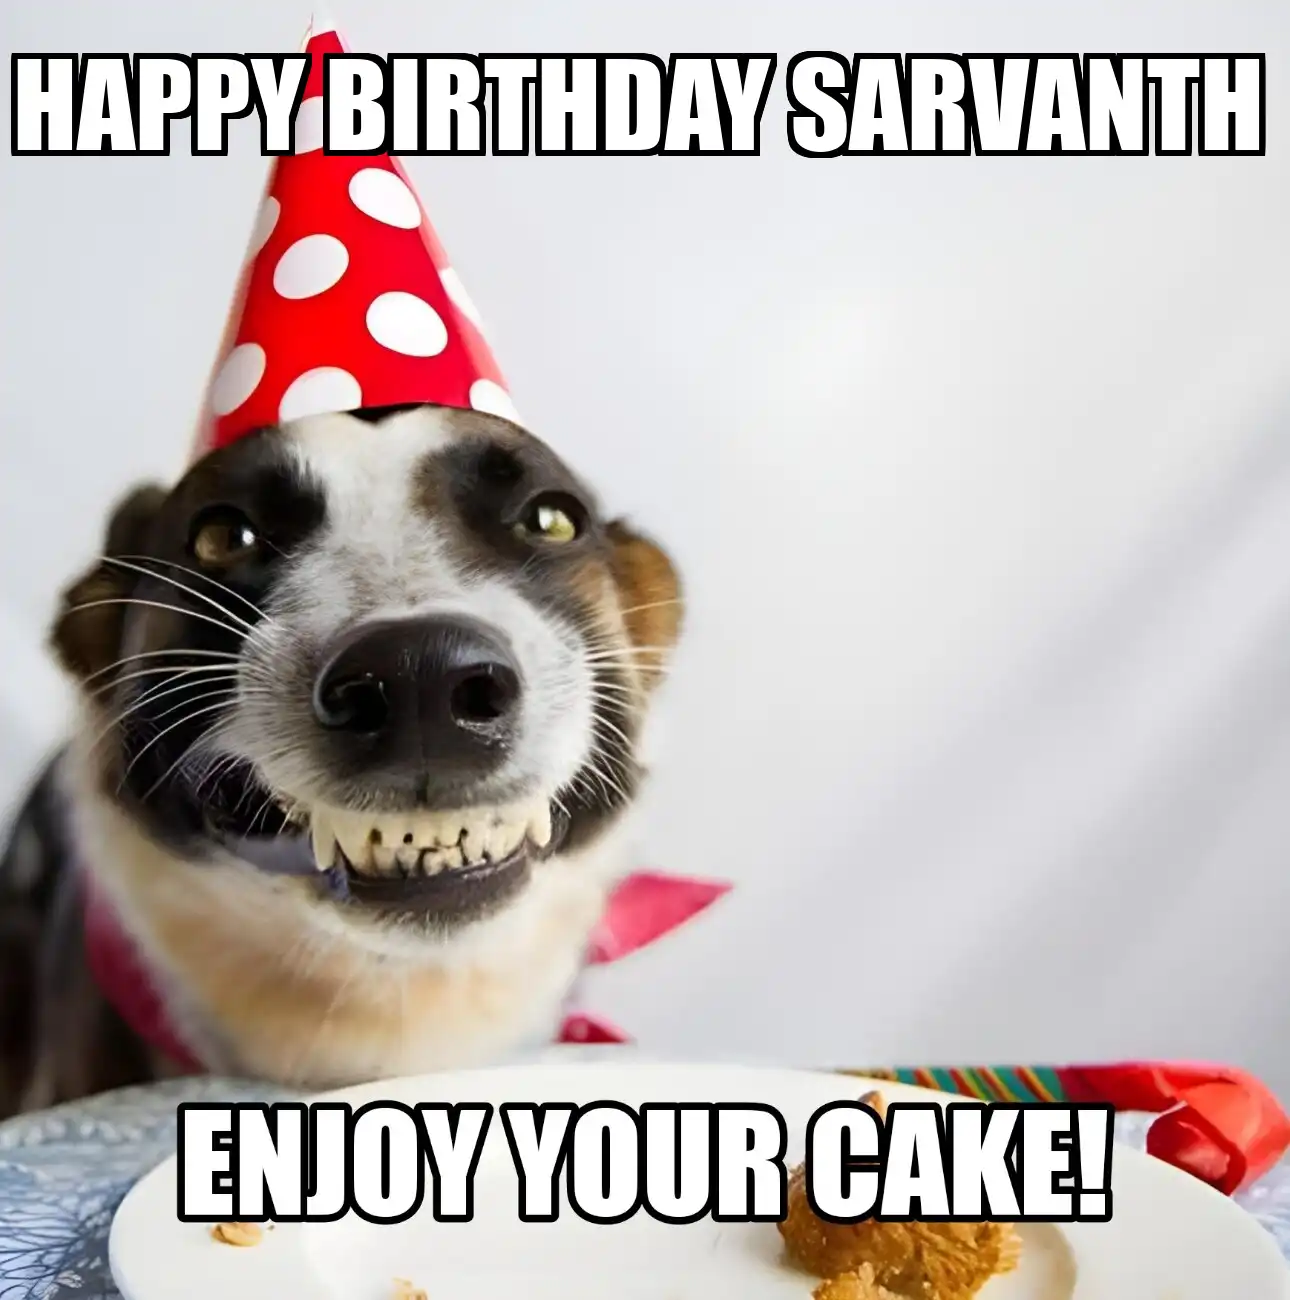 Happy Birthday Sarvanth Enjoy Your Cake Dog Meme